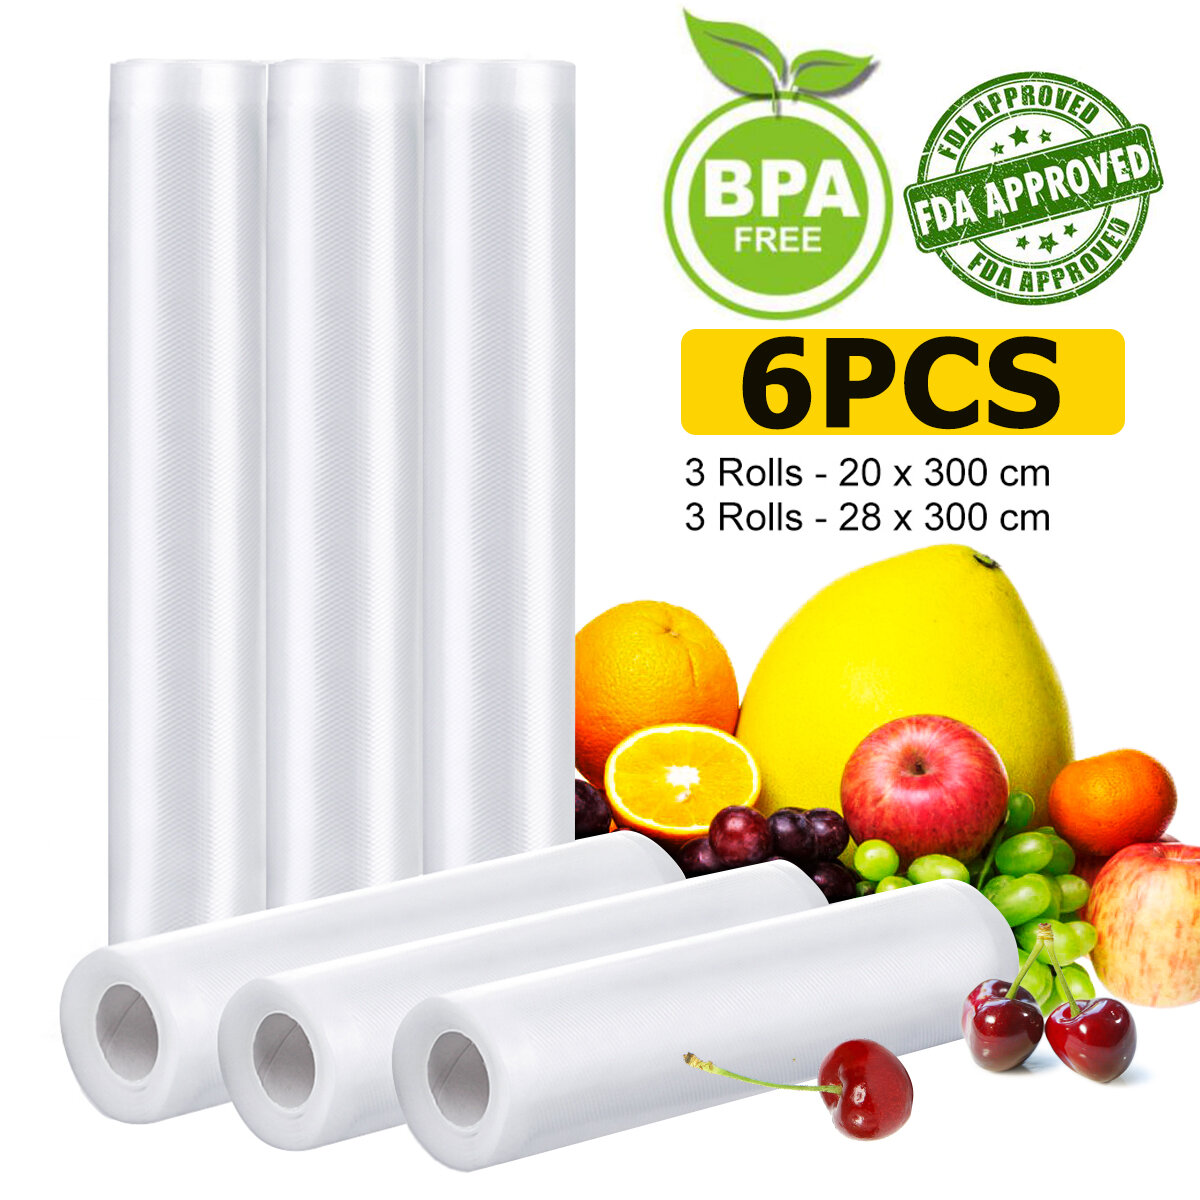 6 Roll Audew Vacuümafdichtfolie Huishoudelijk Voedsel Groente BPA-vrij